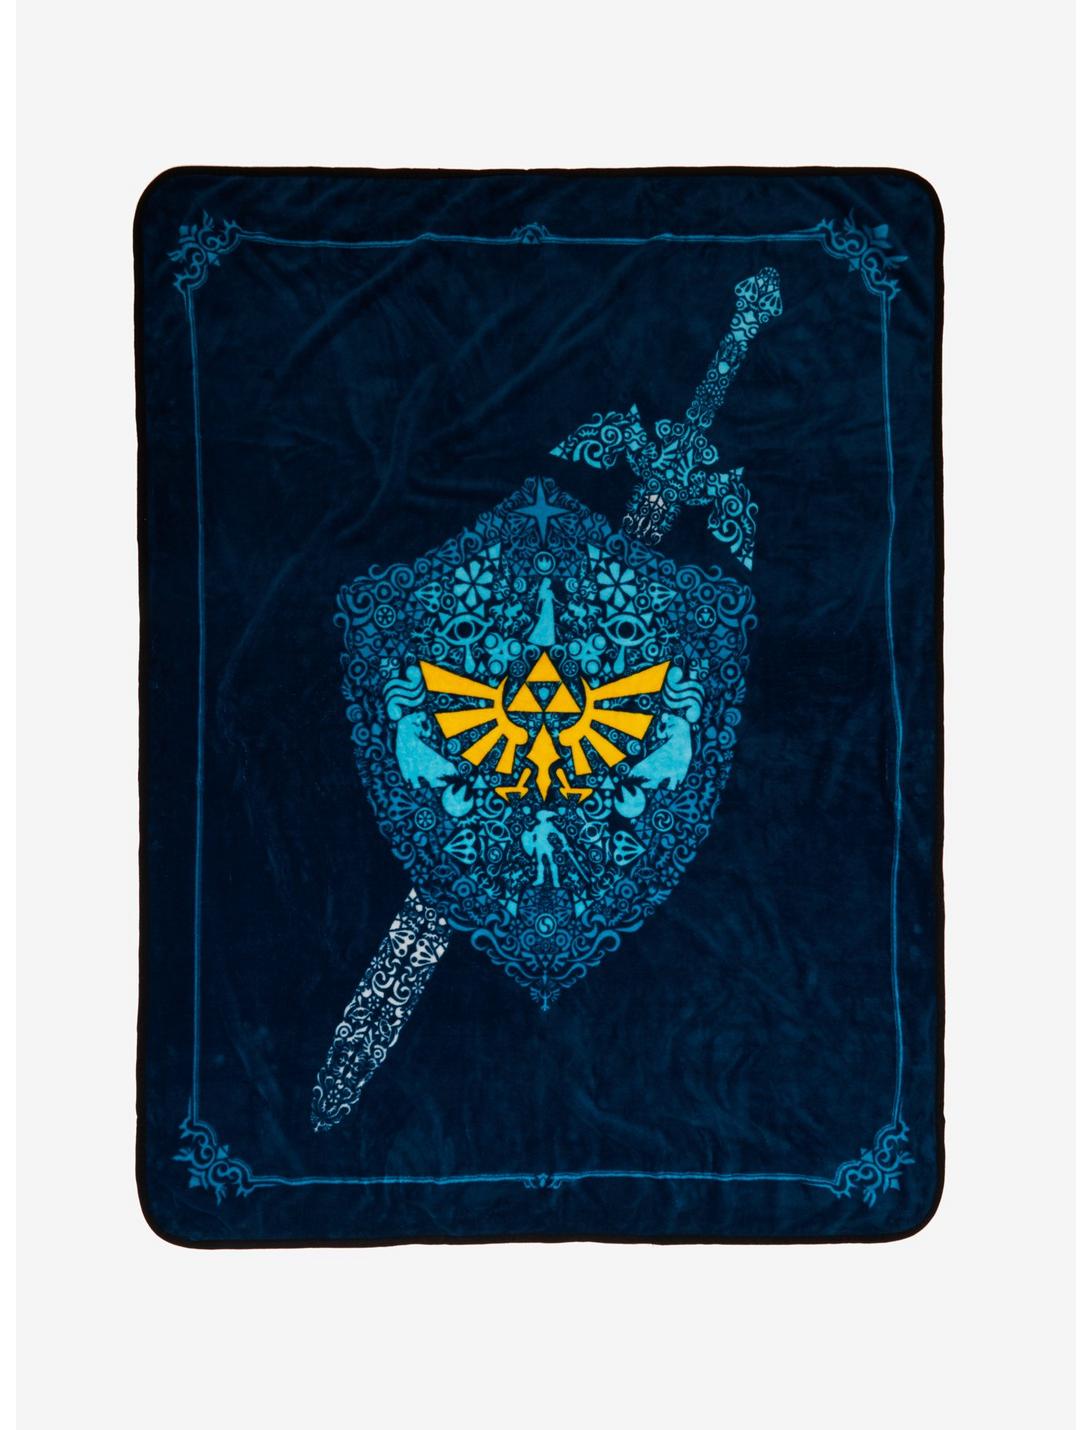 The Legend Of Zelda Shield & Sword Icons Throw Blanket, , hi-res